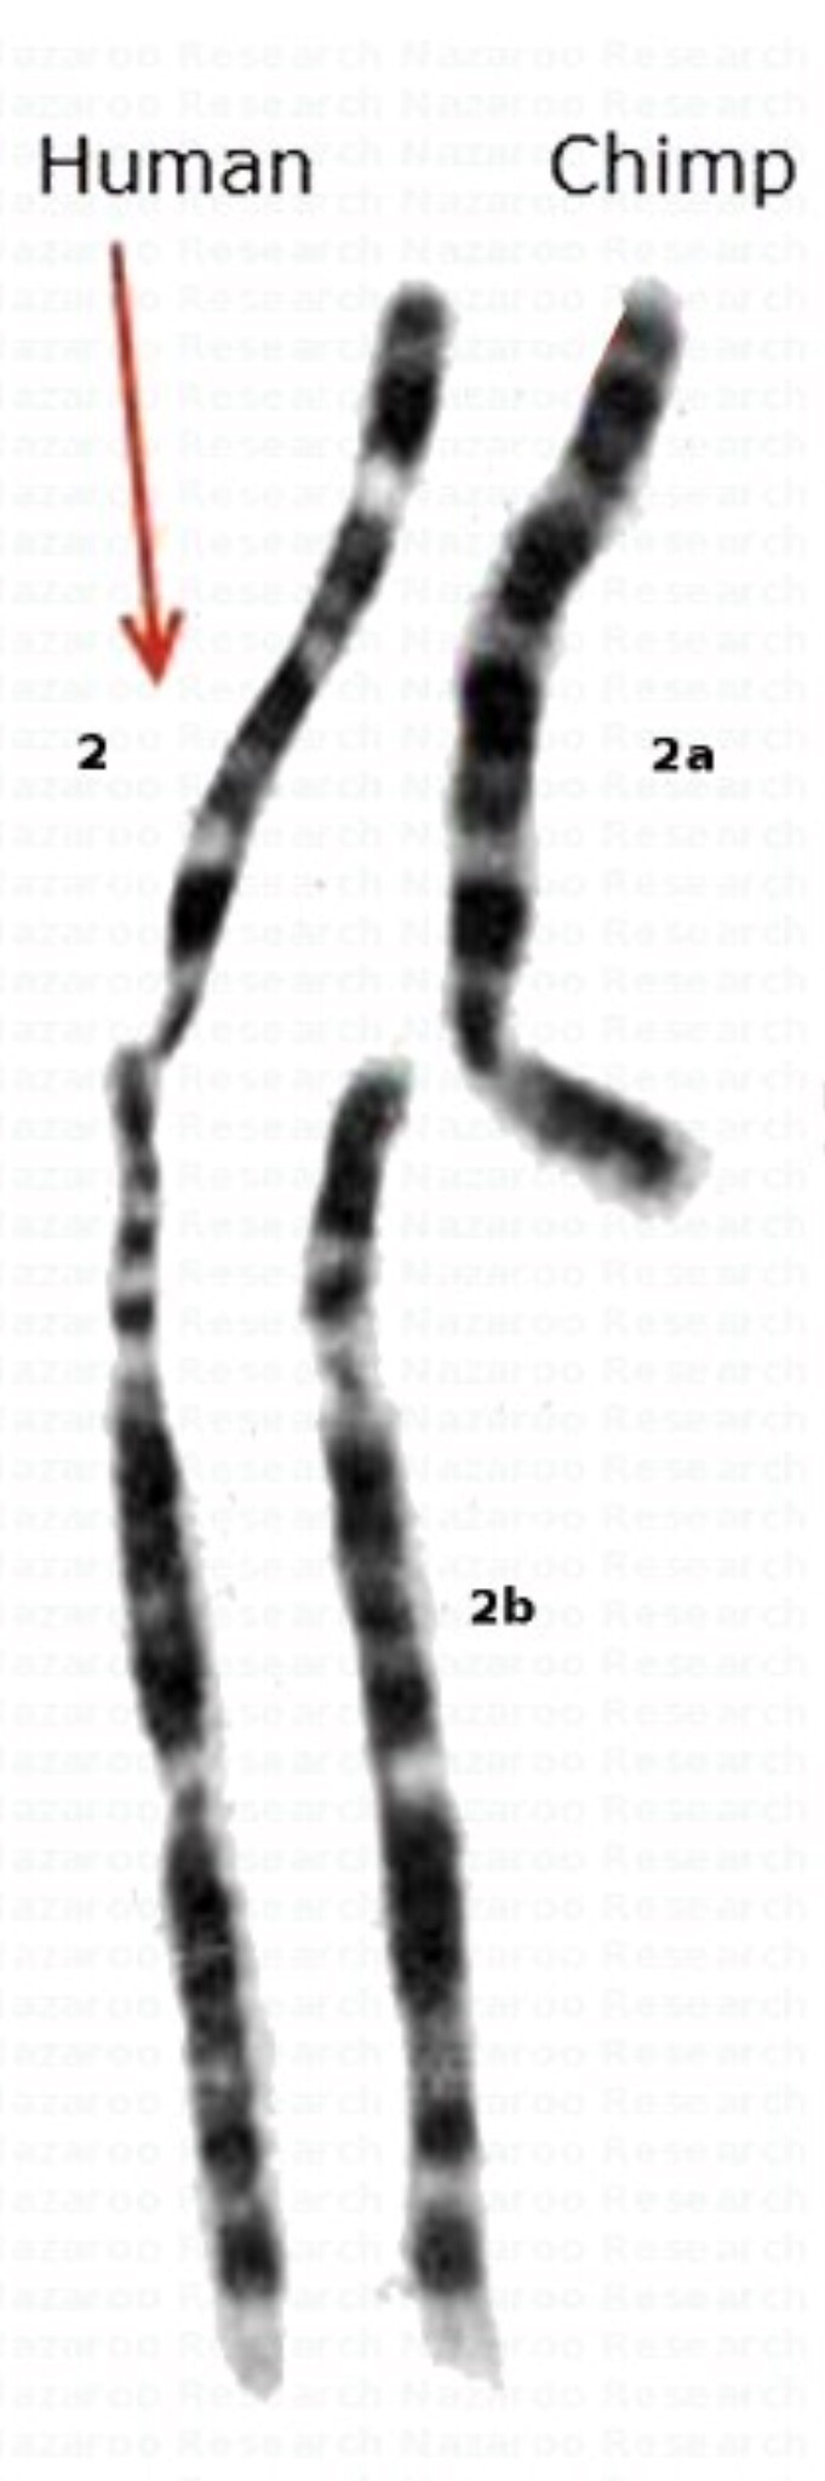 Söz konusu kaynaşmanın yaşandığı kromozomların gerçek fotoğrafı...